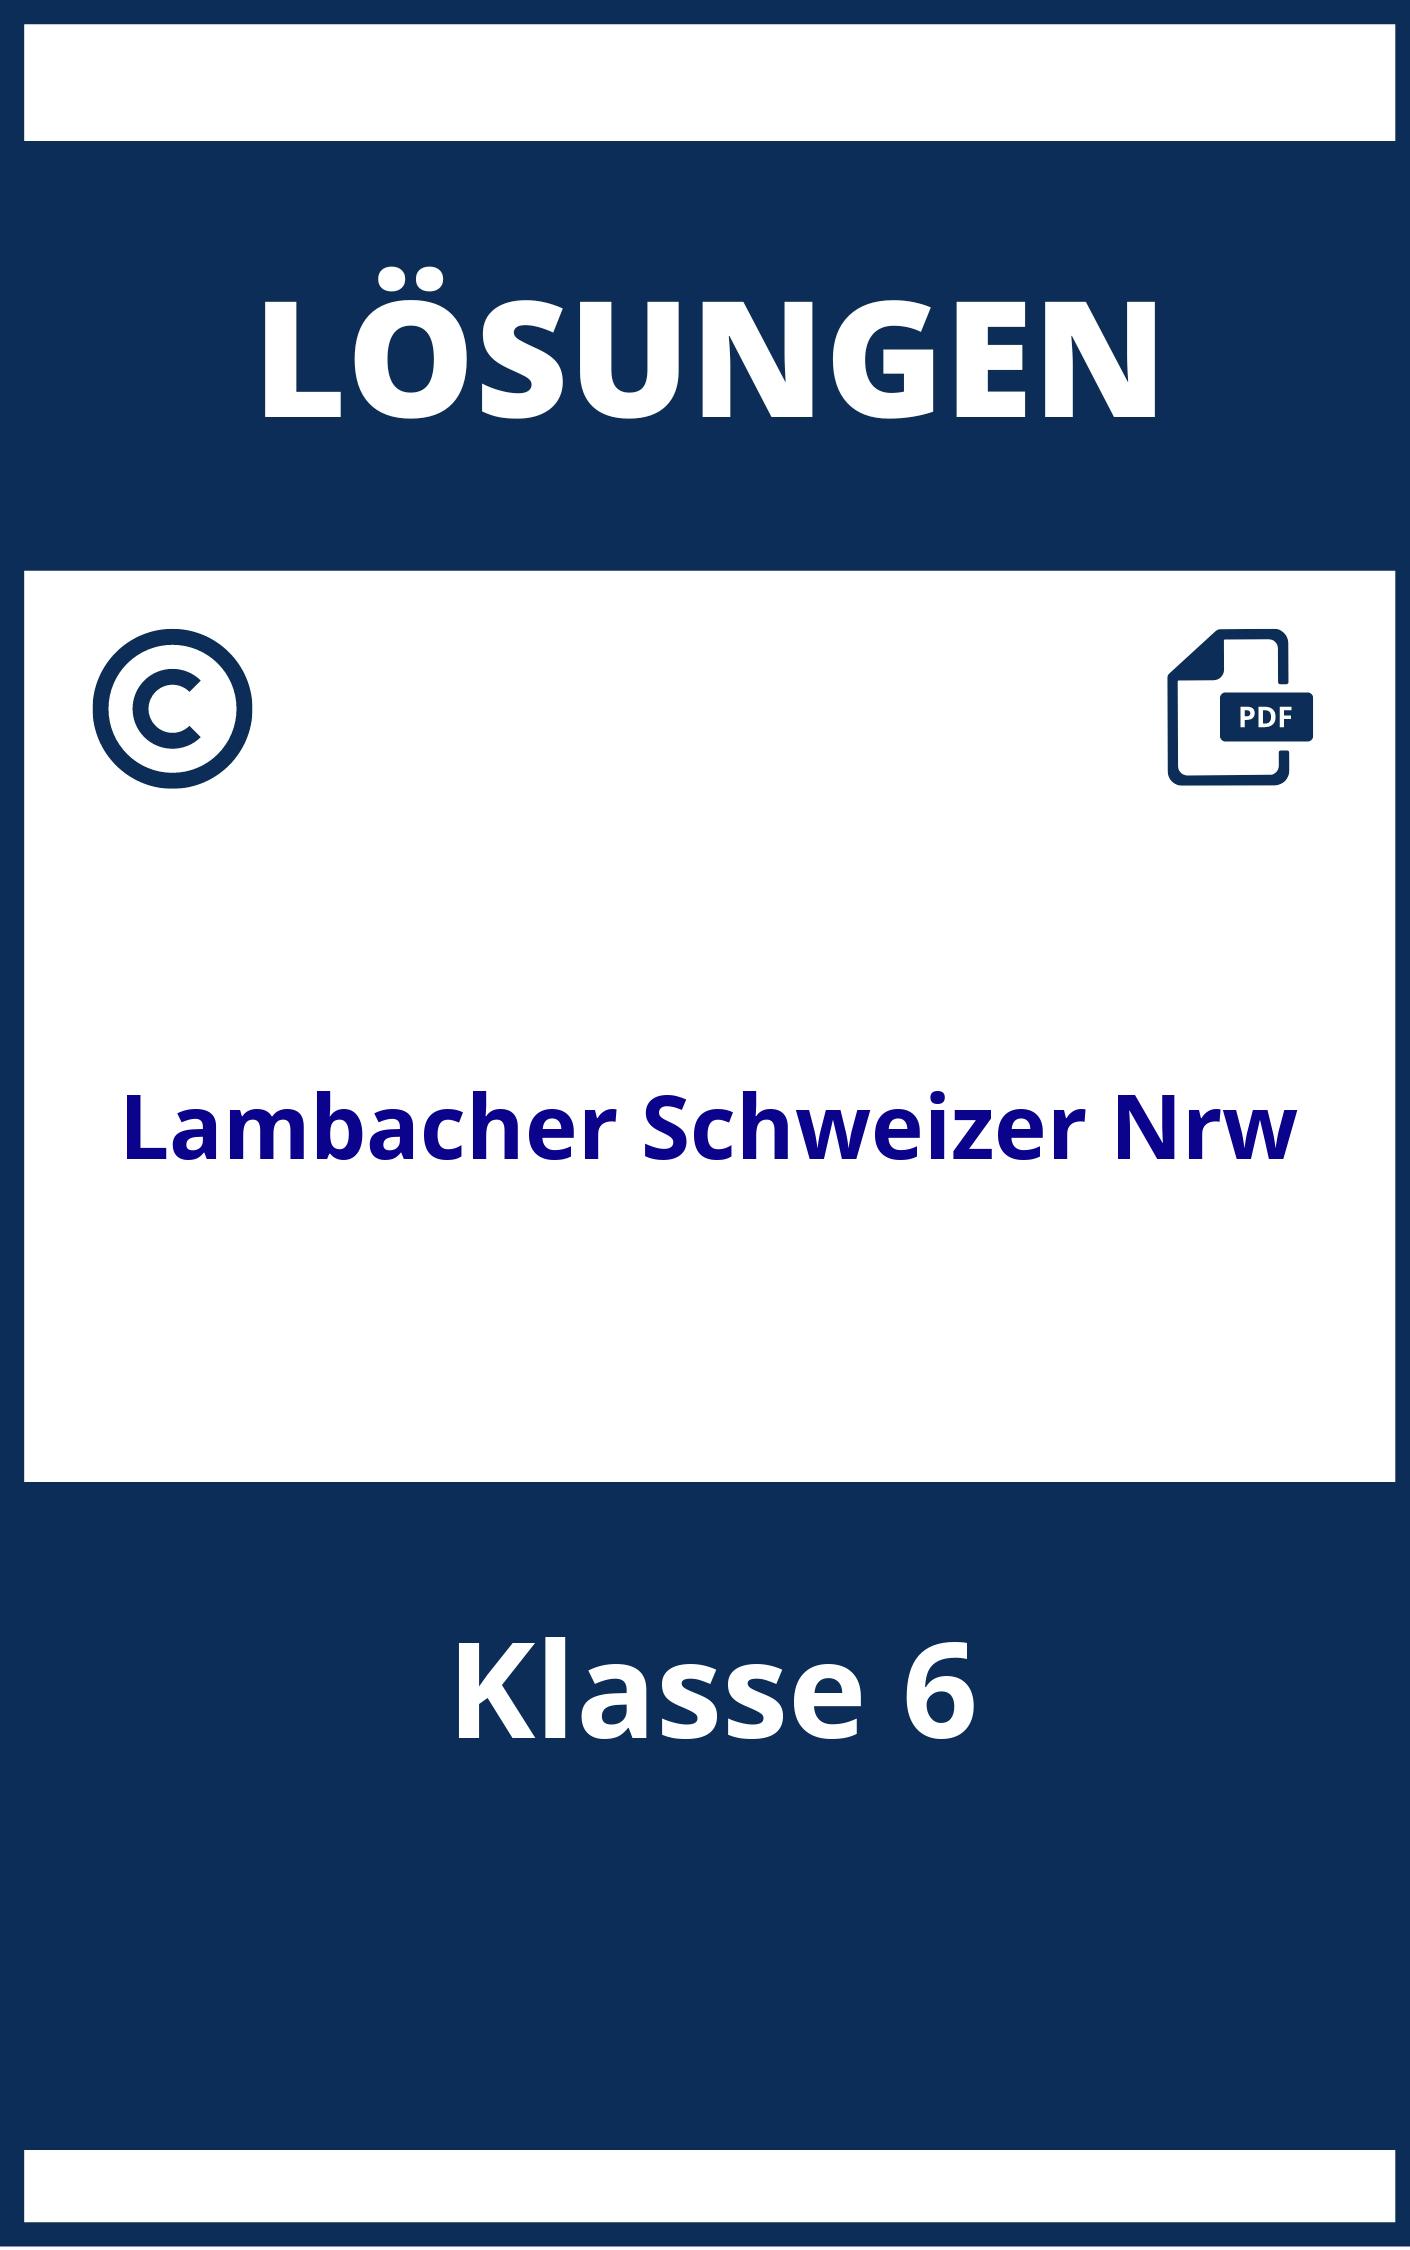 Lambacher Schweizer Lösungen Klasse 6 Nrw